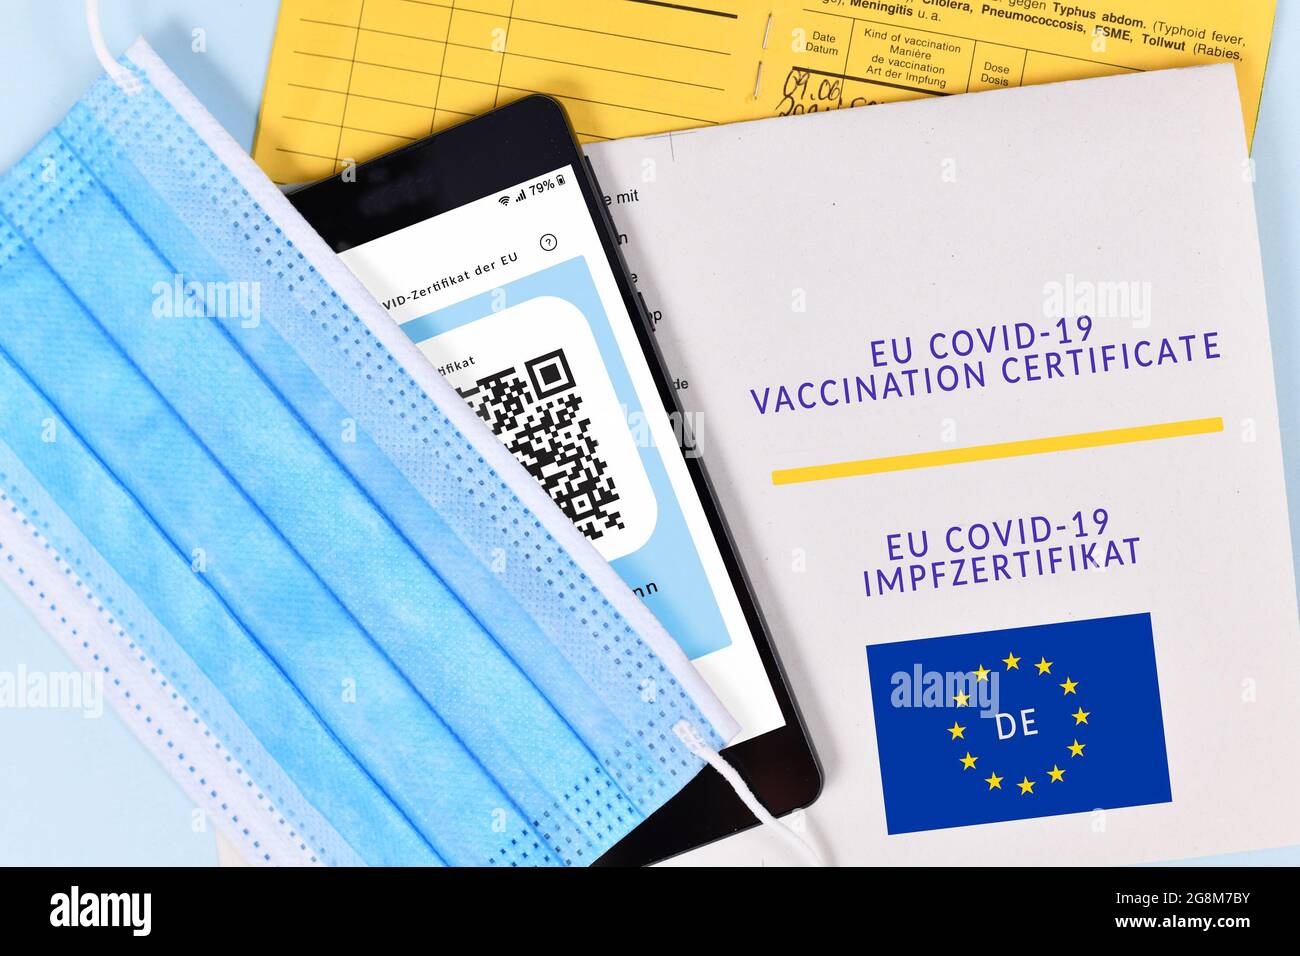 Certificat de vaccination eu COVID-19 sur papier et numérique sur téléphone mobile, passeport vaccinal et masque facial Banque D'Images